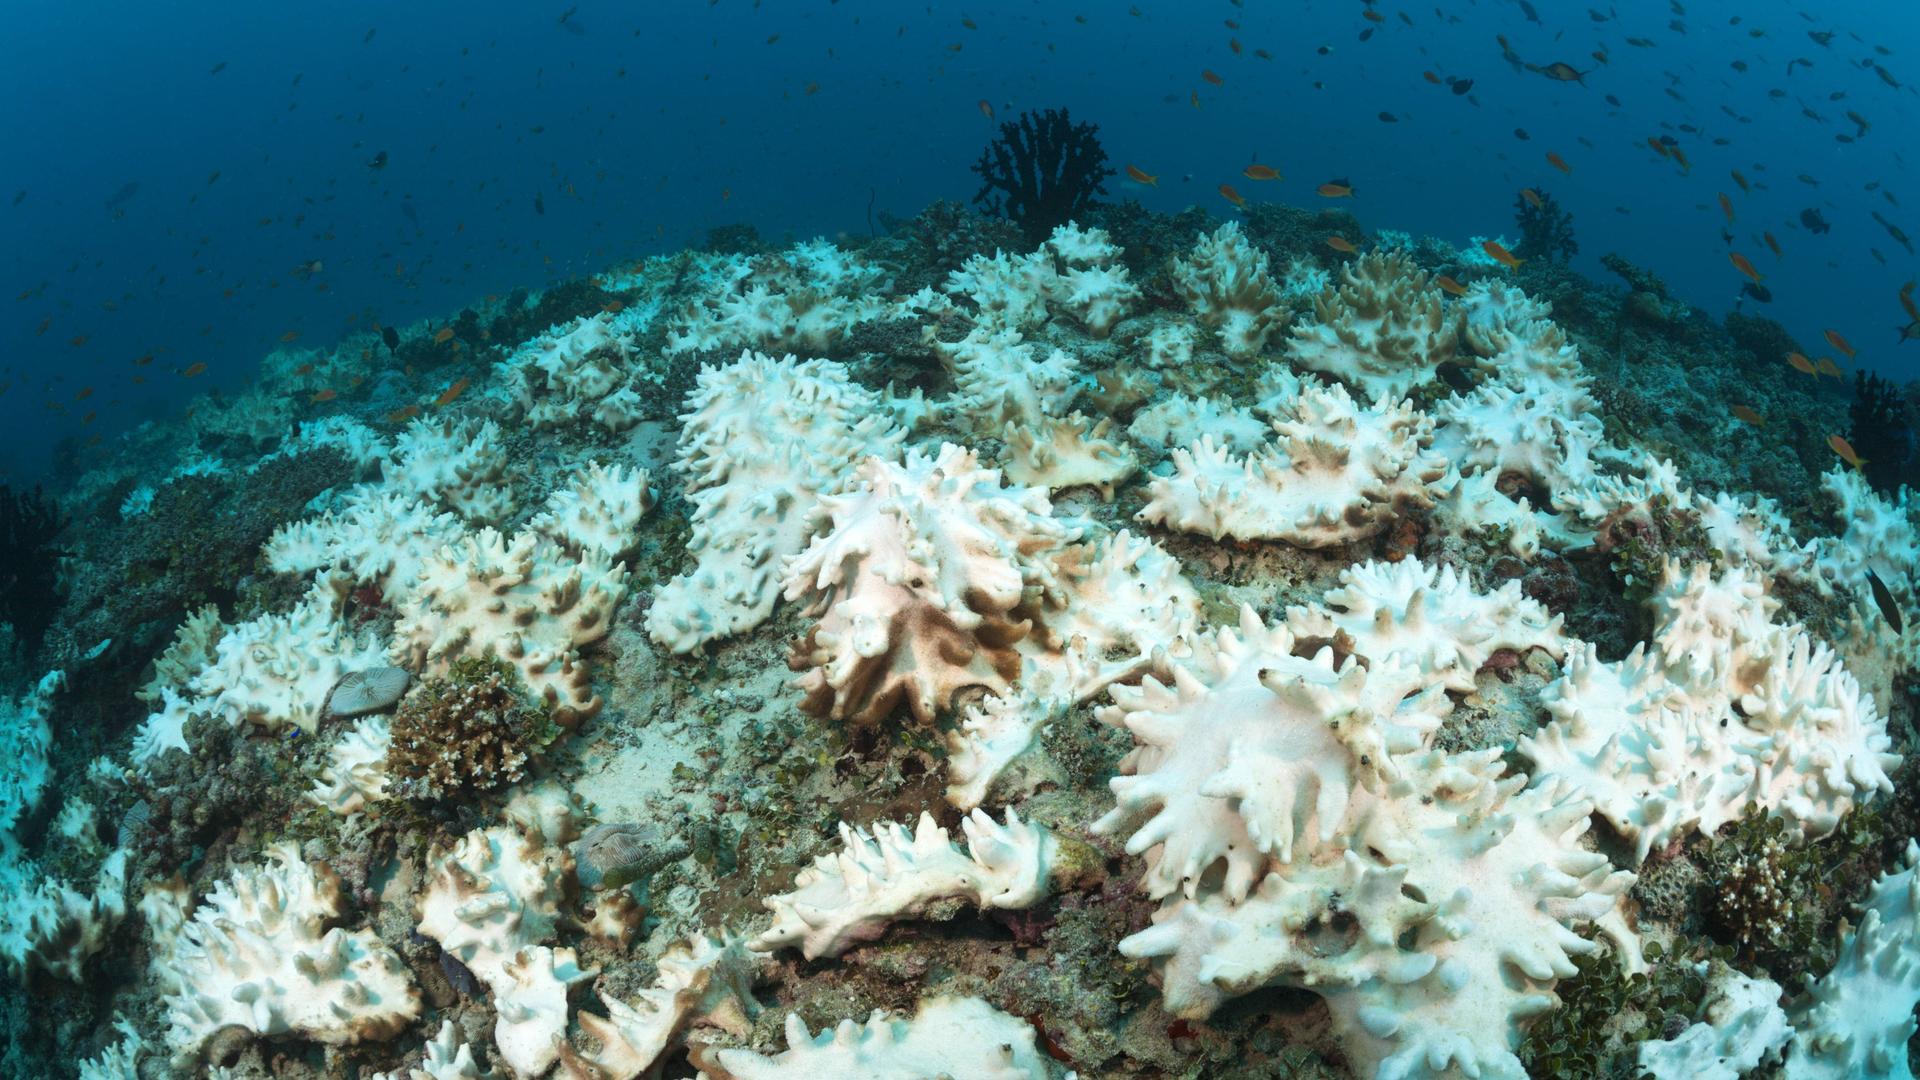 Man sieht mehrere weiße, gebleichte Korallen auf einem Riffdach im Meer.